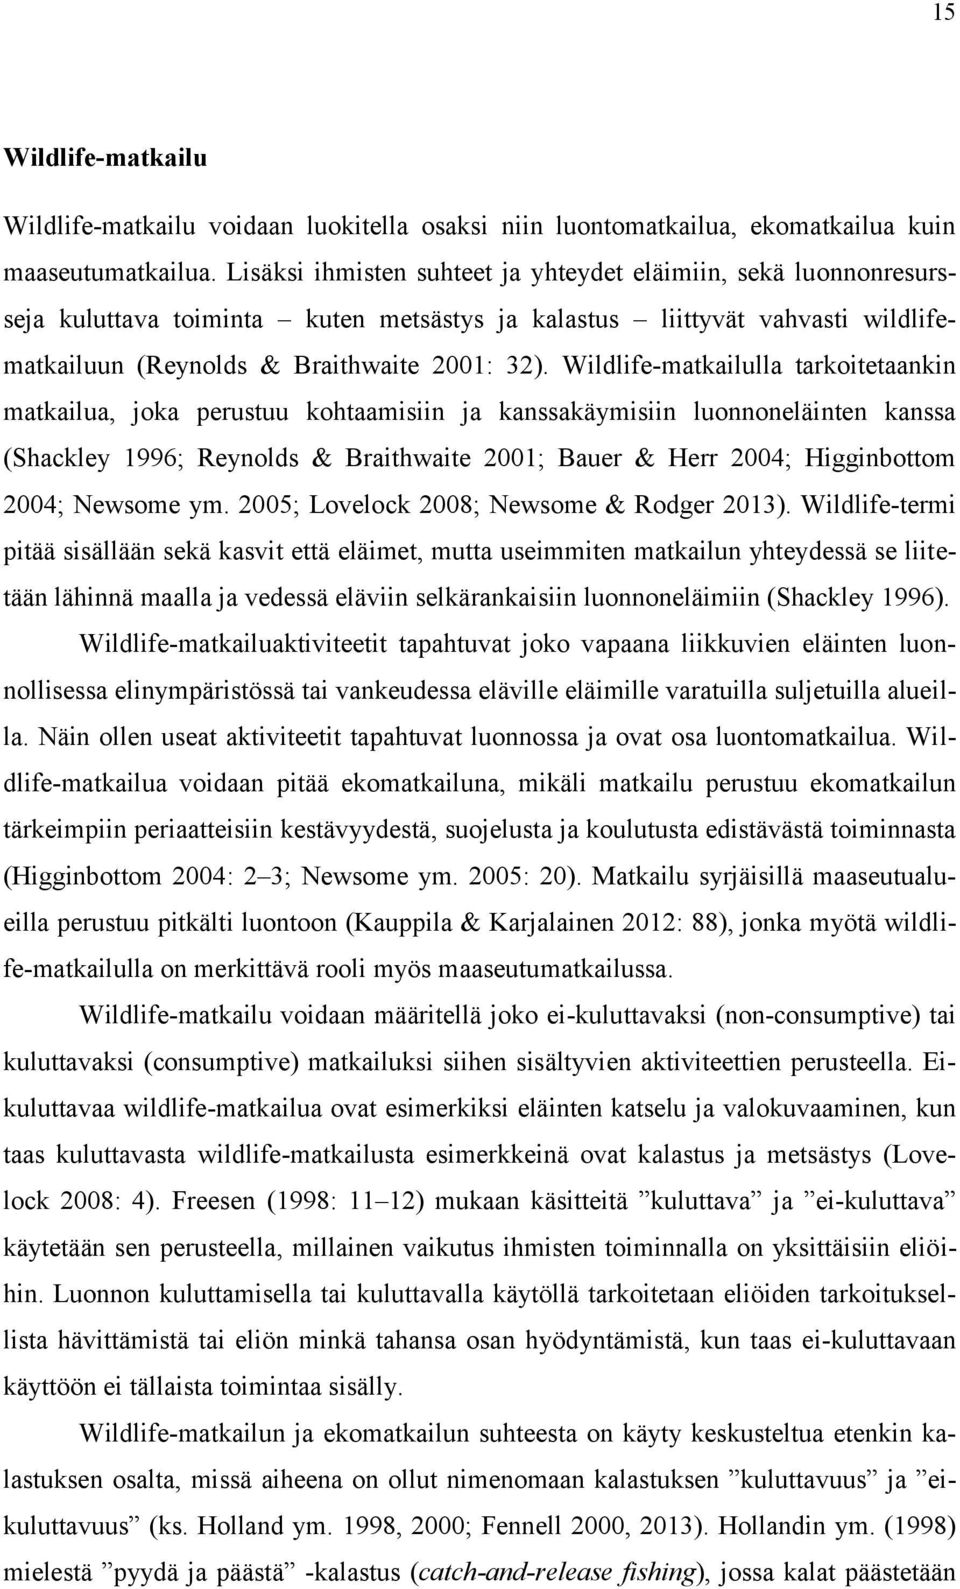 Wildlife-matkailulla tarkoitetaankin matkailua, joka perustuu kohtaamisiin ja kanssakäymisiin luonnoneläinten kanssa (Shackley 1996; Reynolds & Braithwaite 2001; Bauer & Herr 2004; Higginbottom 2004;